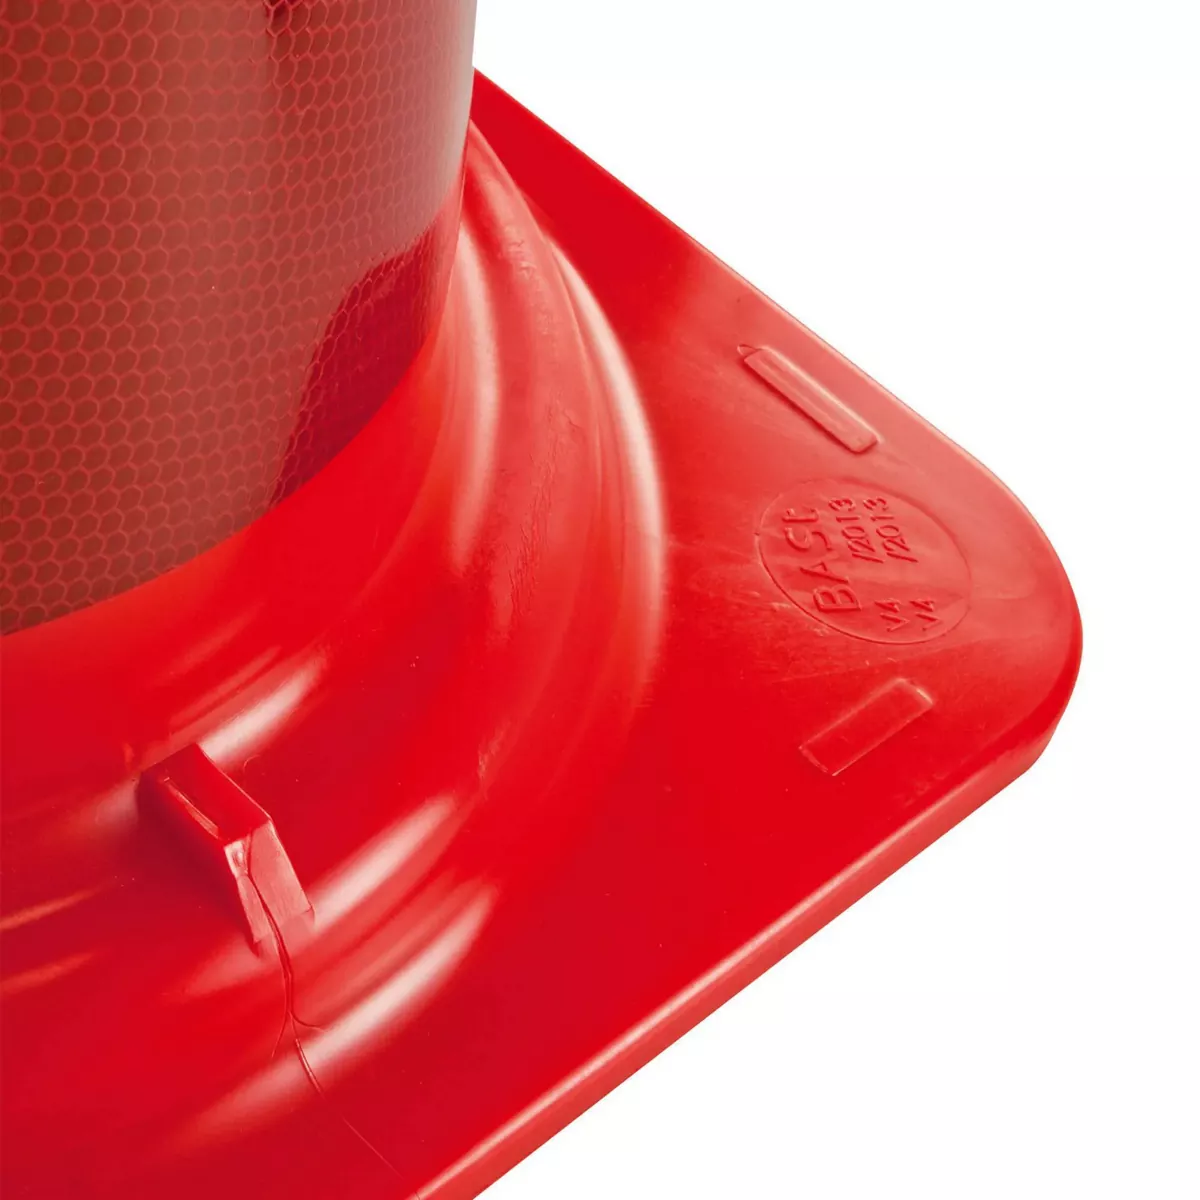 Morion-Leitkegel-EU, 500 mm, rot-orange, einteilig, Kegel aus PVC, vollflächig rot-weiß reflektierend, Typ A, Gewichtsklasse II, nach TL-Leitkegel und DIN EN 13422 BASt geprüft: V4 19/2013